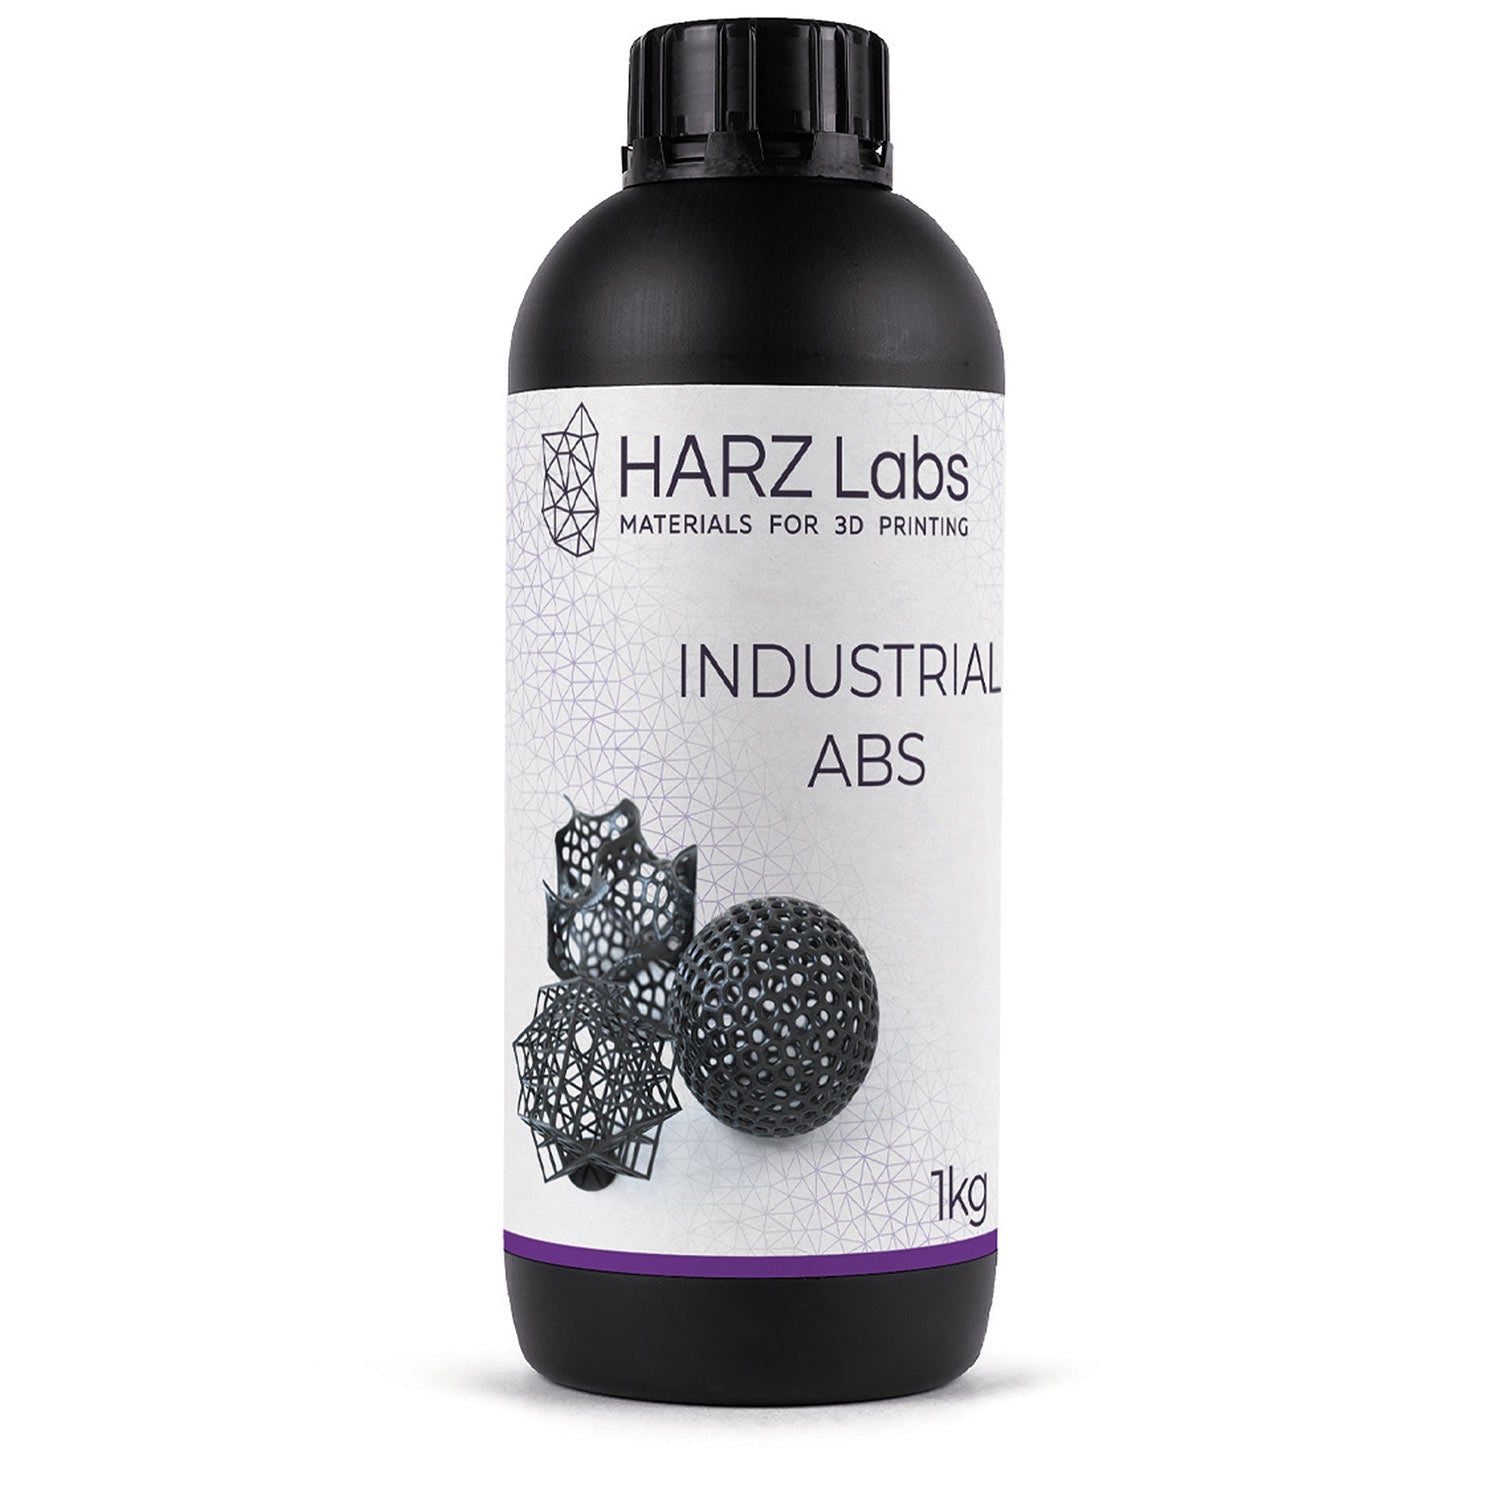 Harz Labs Industrial ABS Black Resin - 1kg